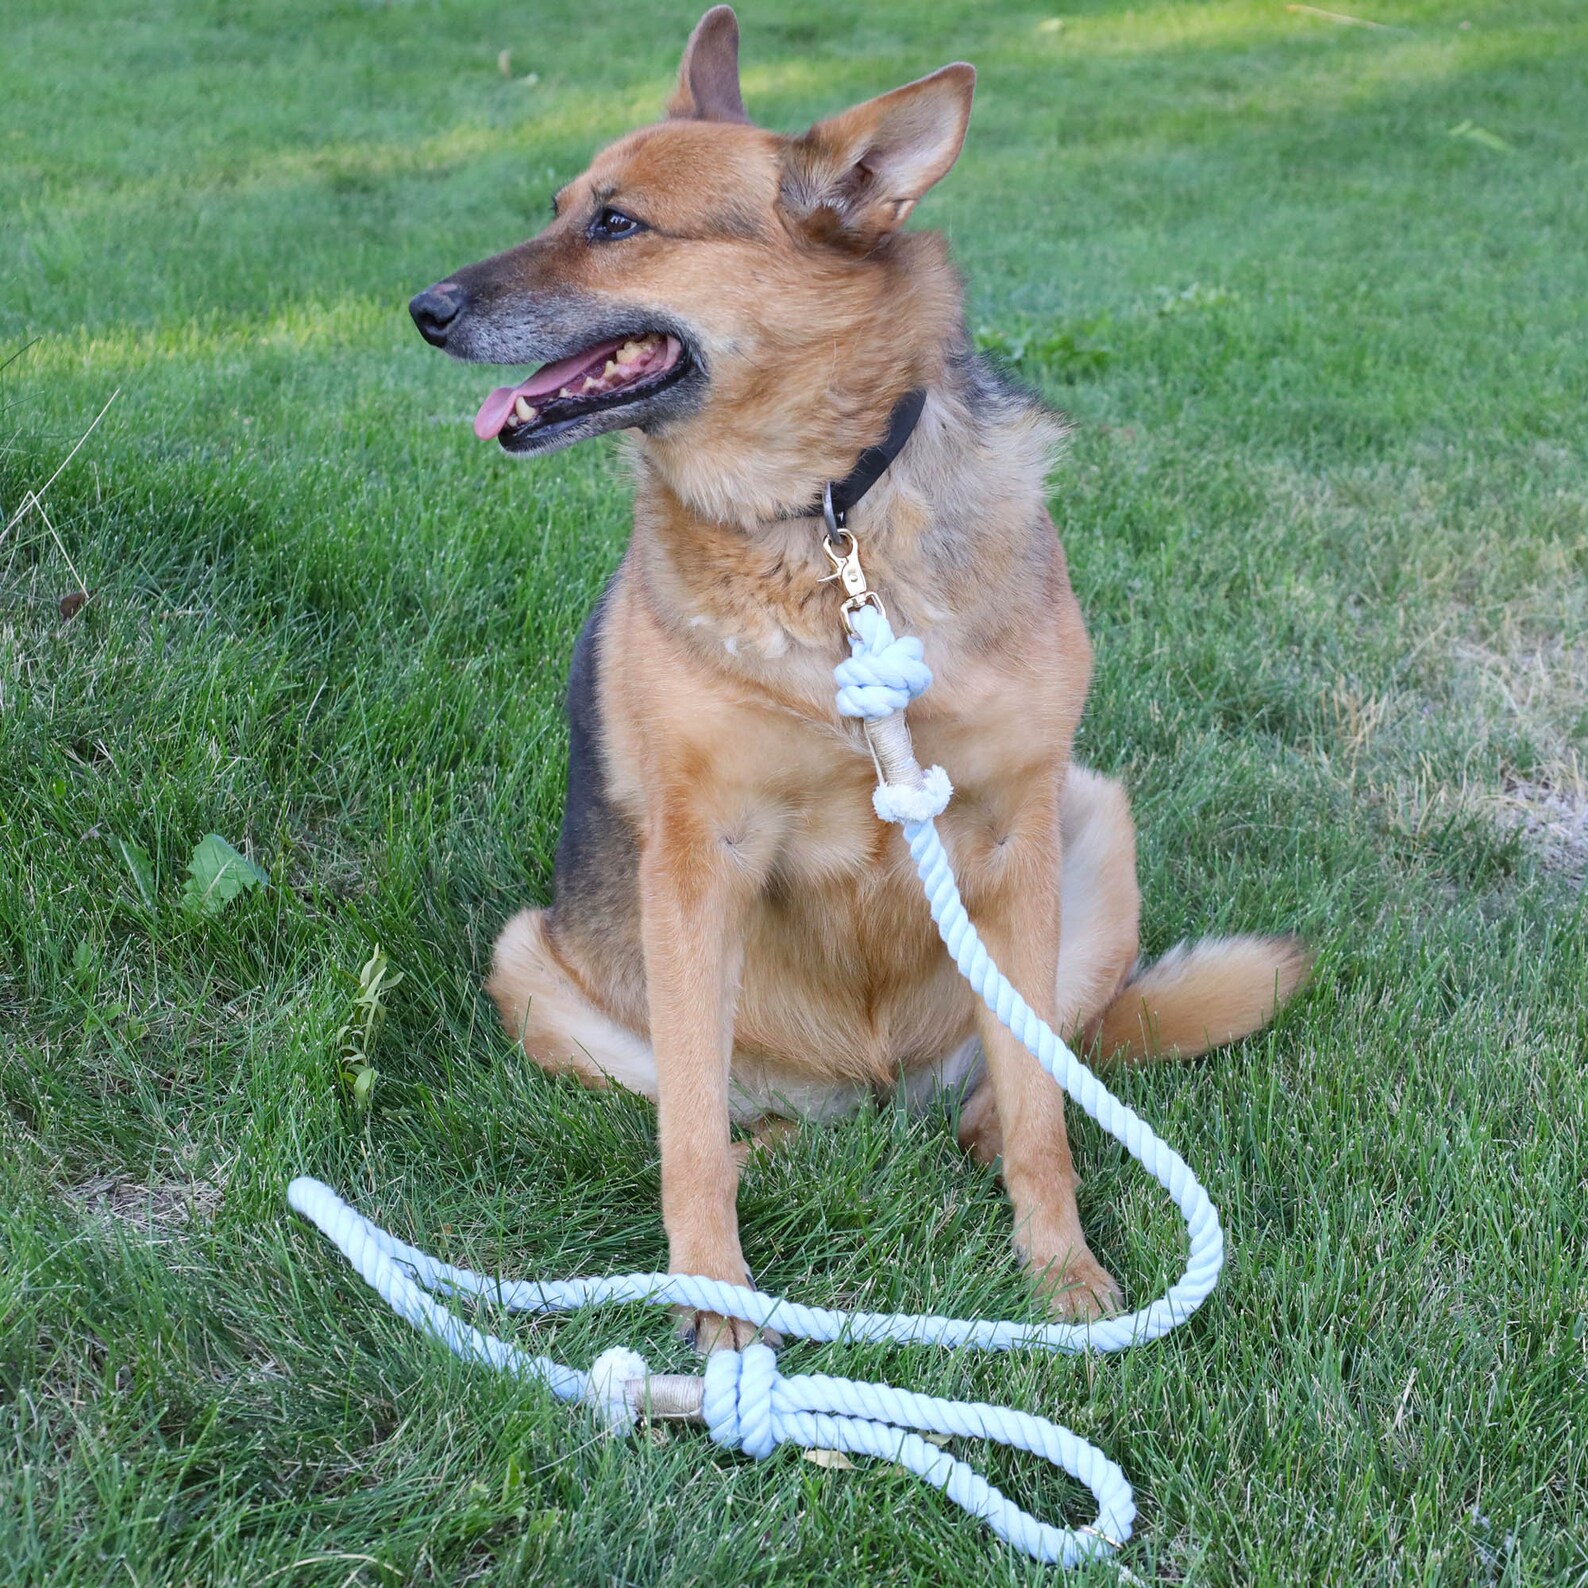 Handsfree dog leash 2